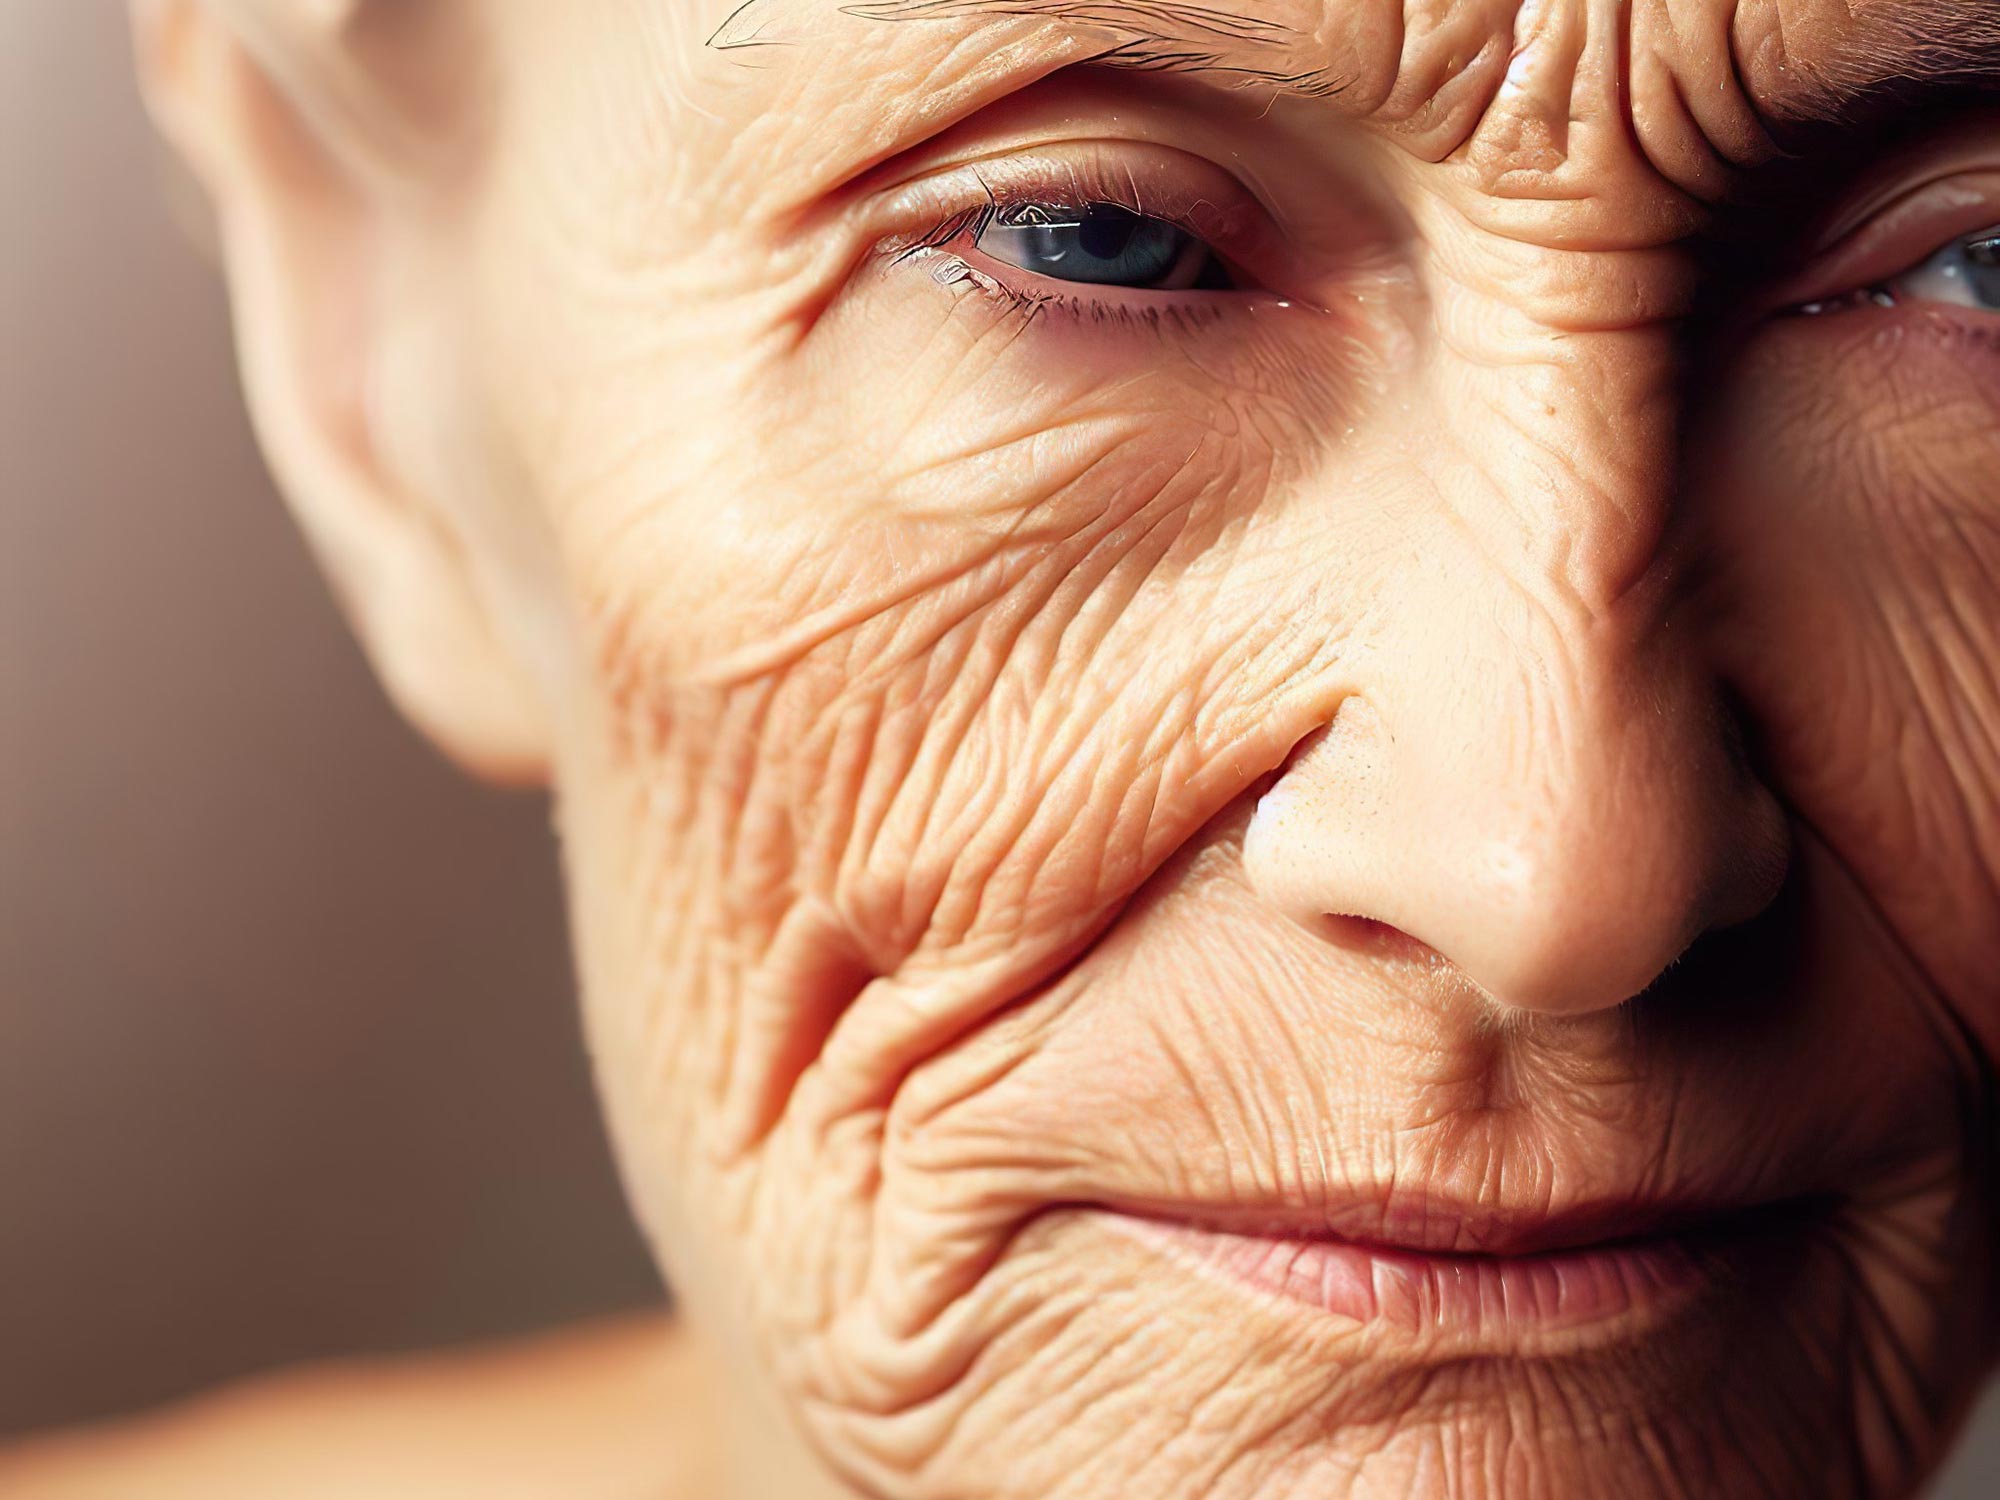 피부 노화에 중요한 역할을 하는 단백질 발견